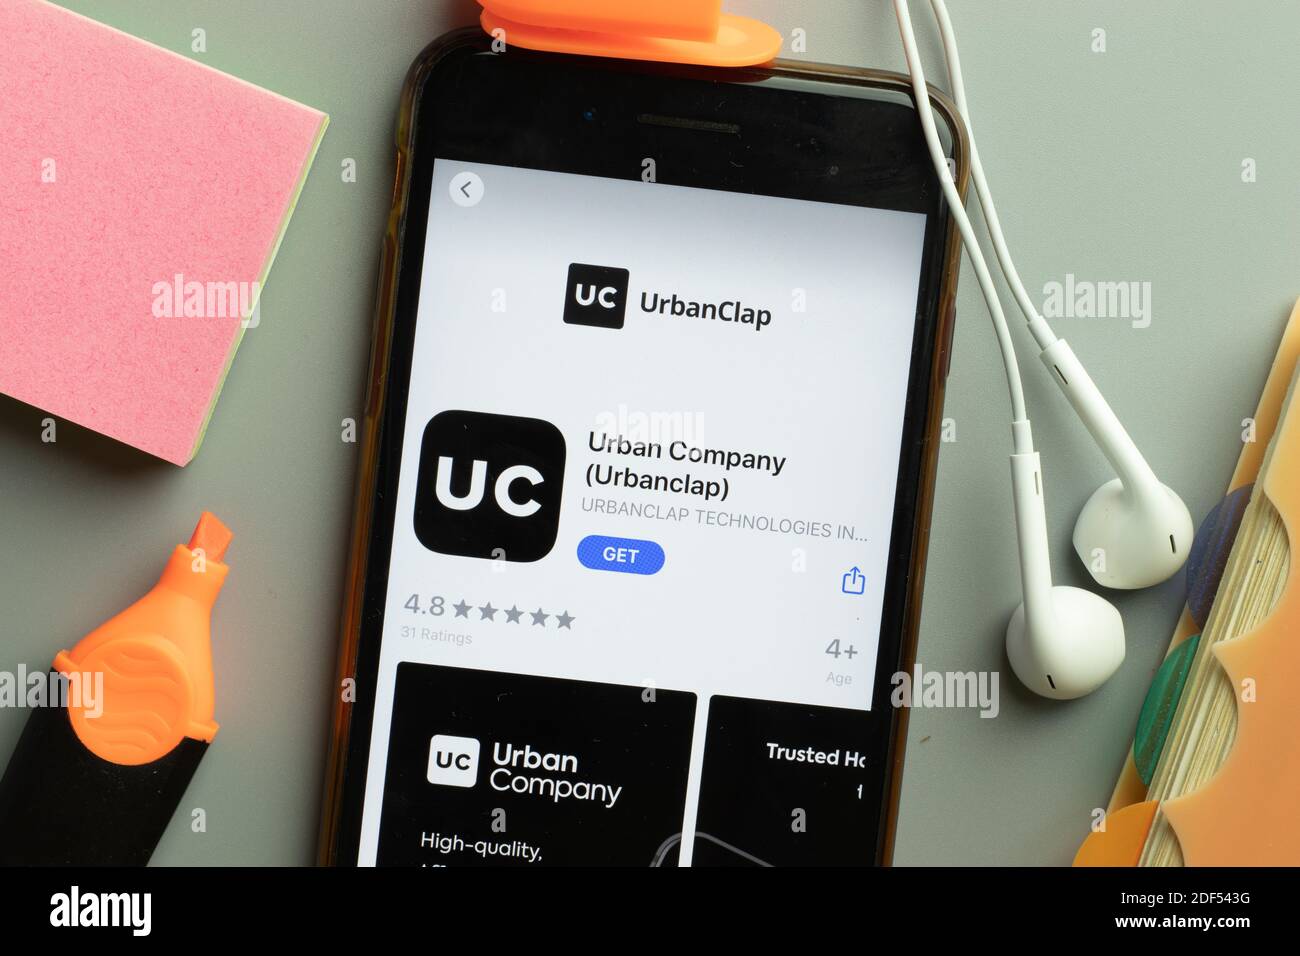 New York, USA - 1 dicembre 2020: Icona dell'app mobile Urban Company UrbanClap sulla vista superiore dello schermo del telefono, Editoriale illustrativo. Foto Stock